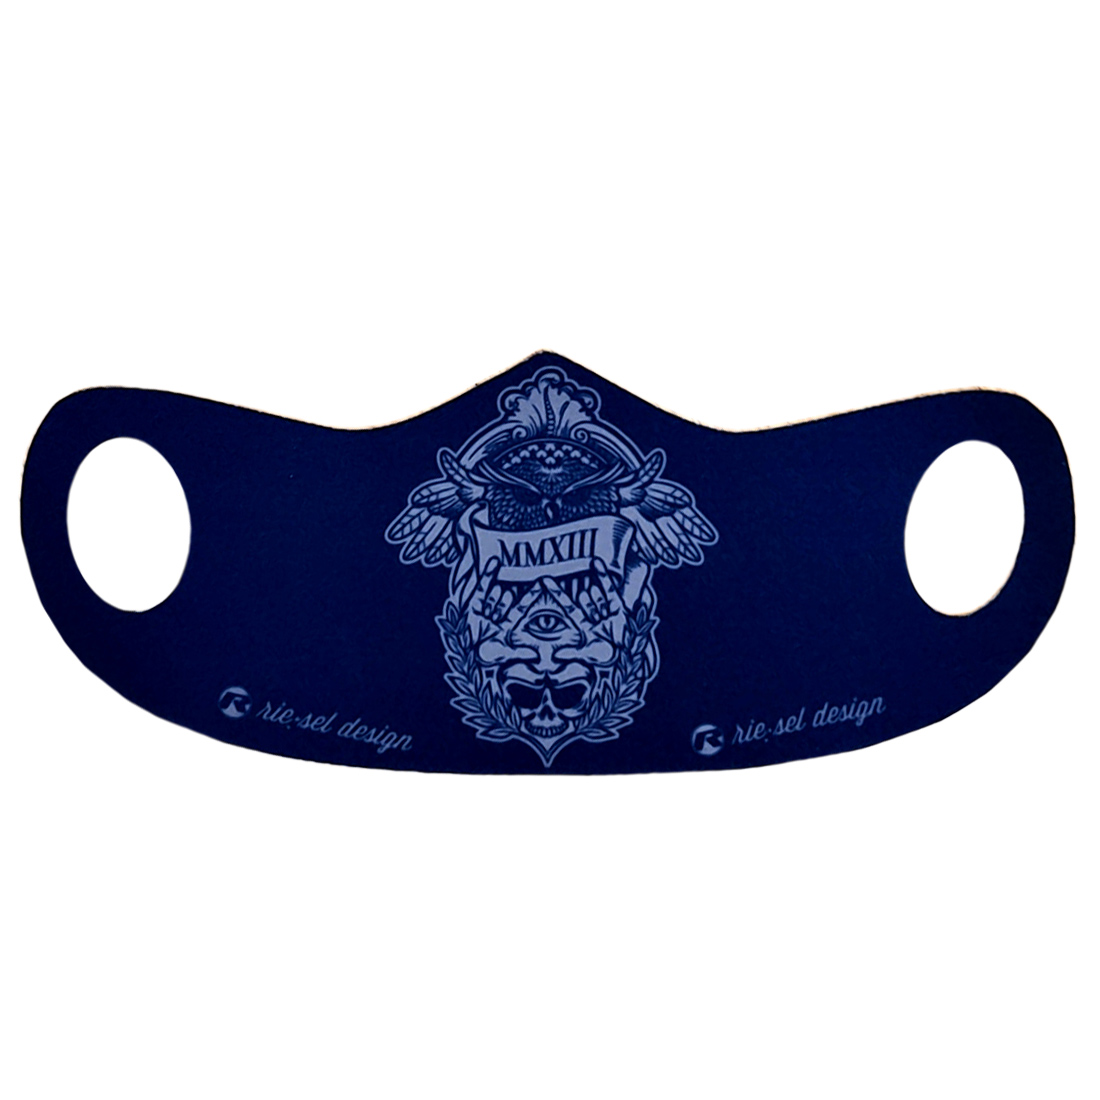 Produktbild von rie:sel design Mund- und Nasenschutz - illuminati navy blue